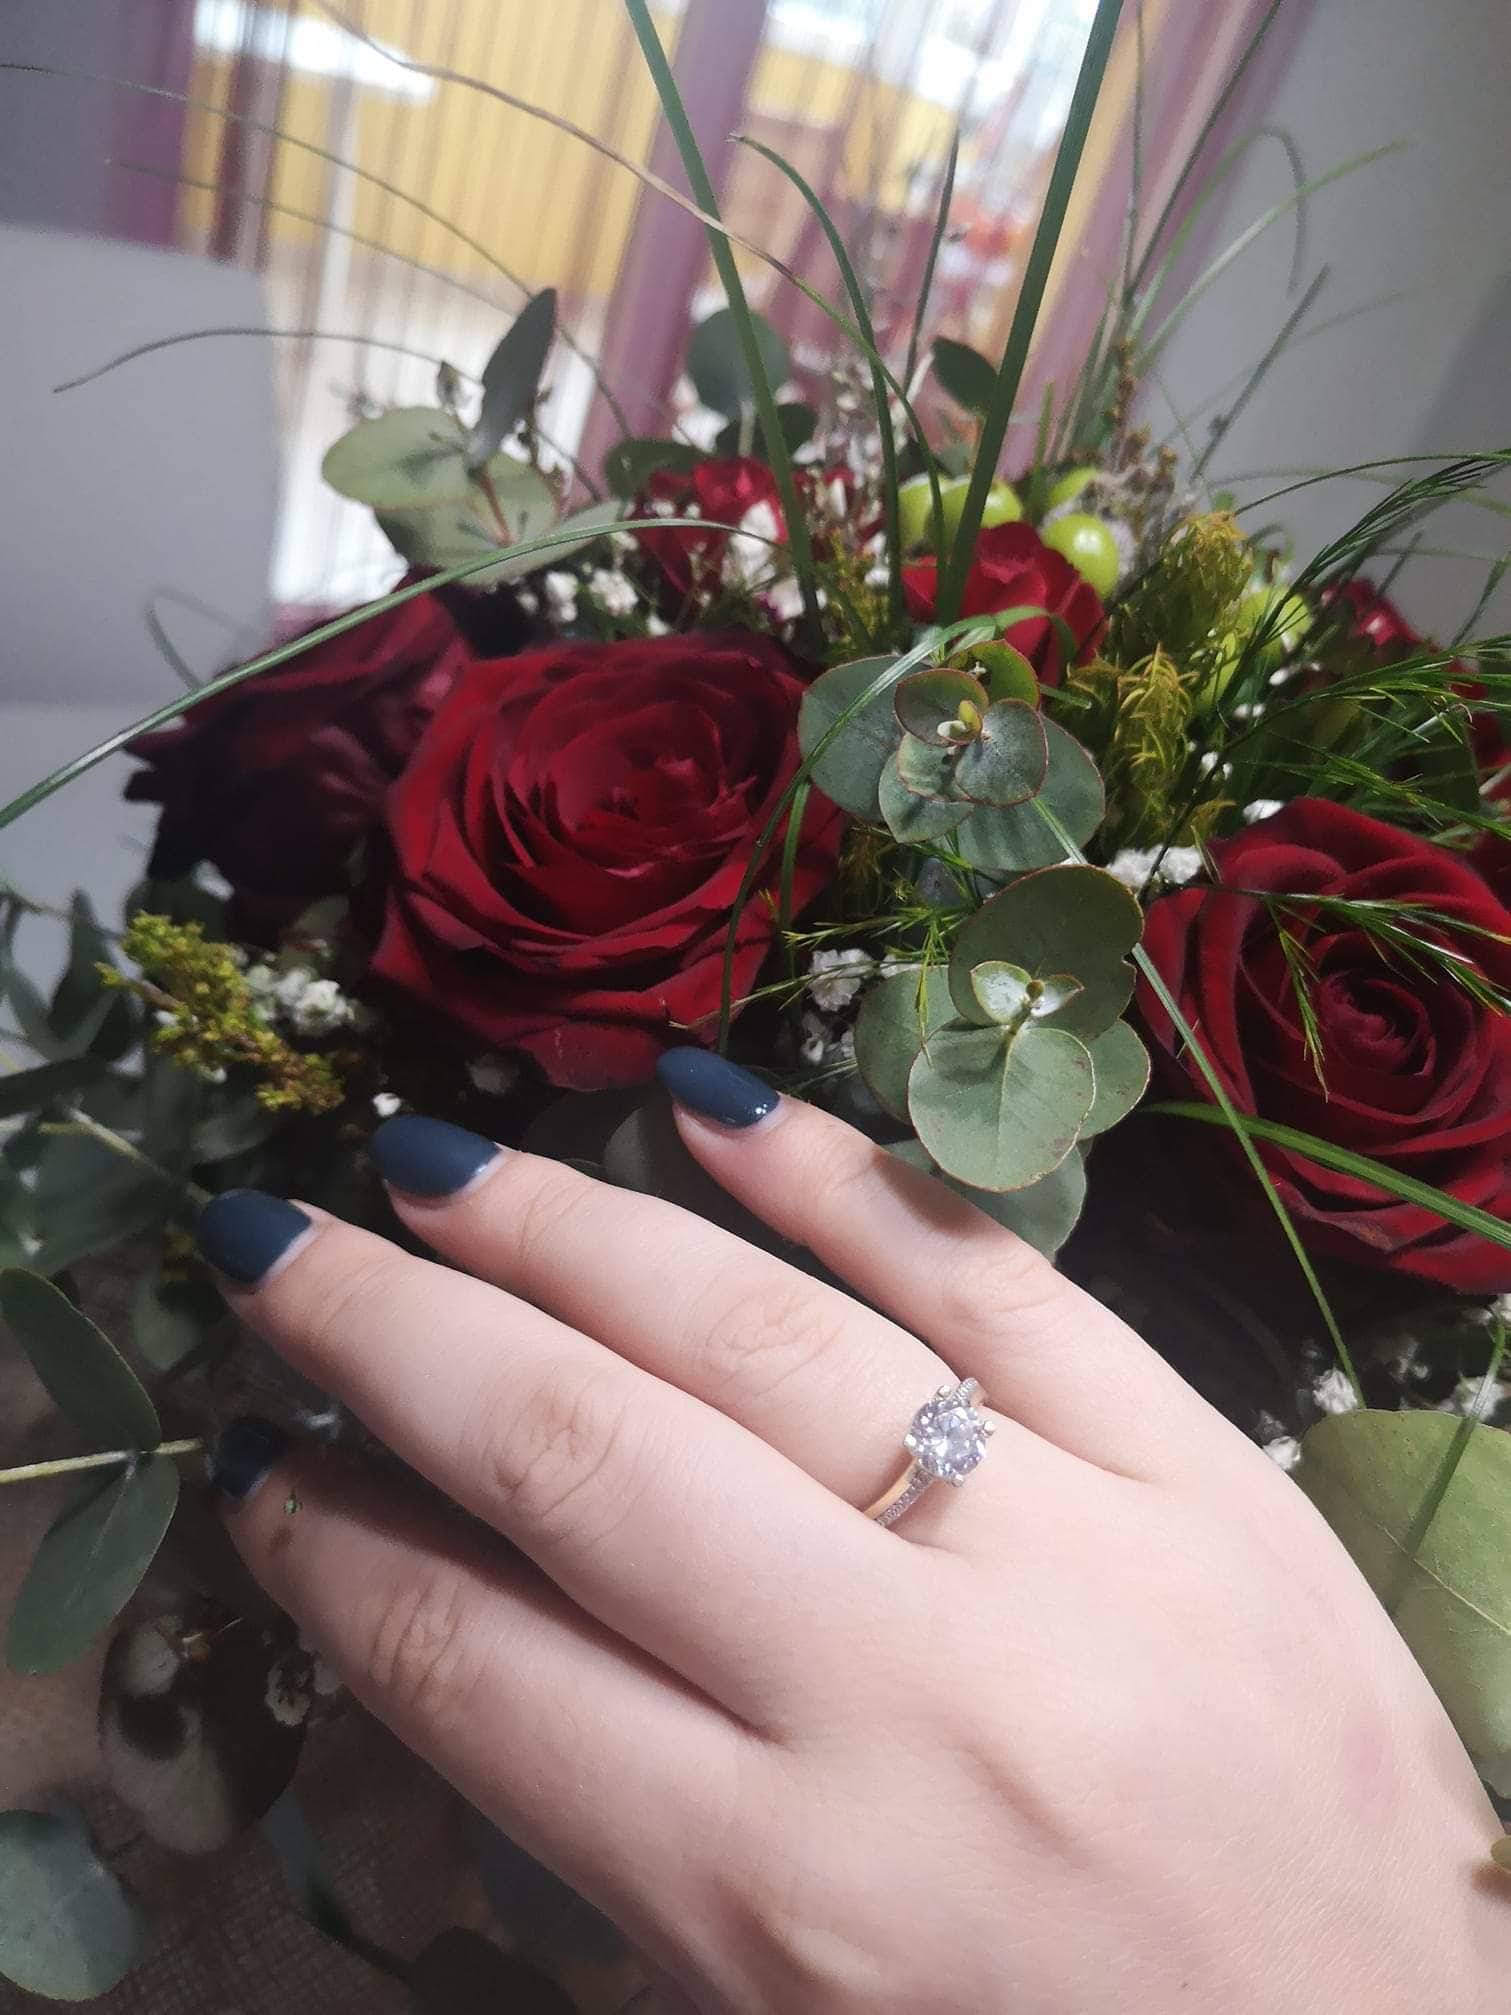 'Pale' su zaruke: Vatroslav je Valentini kupio čak dva prstena